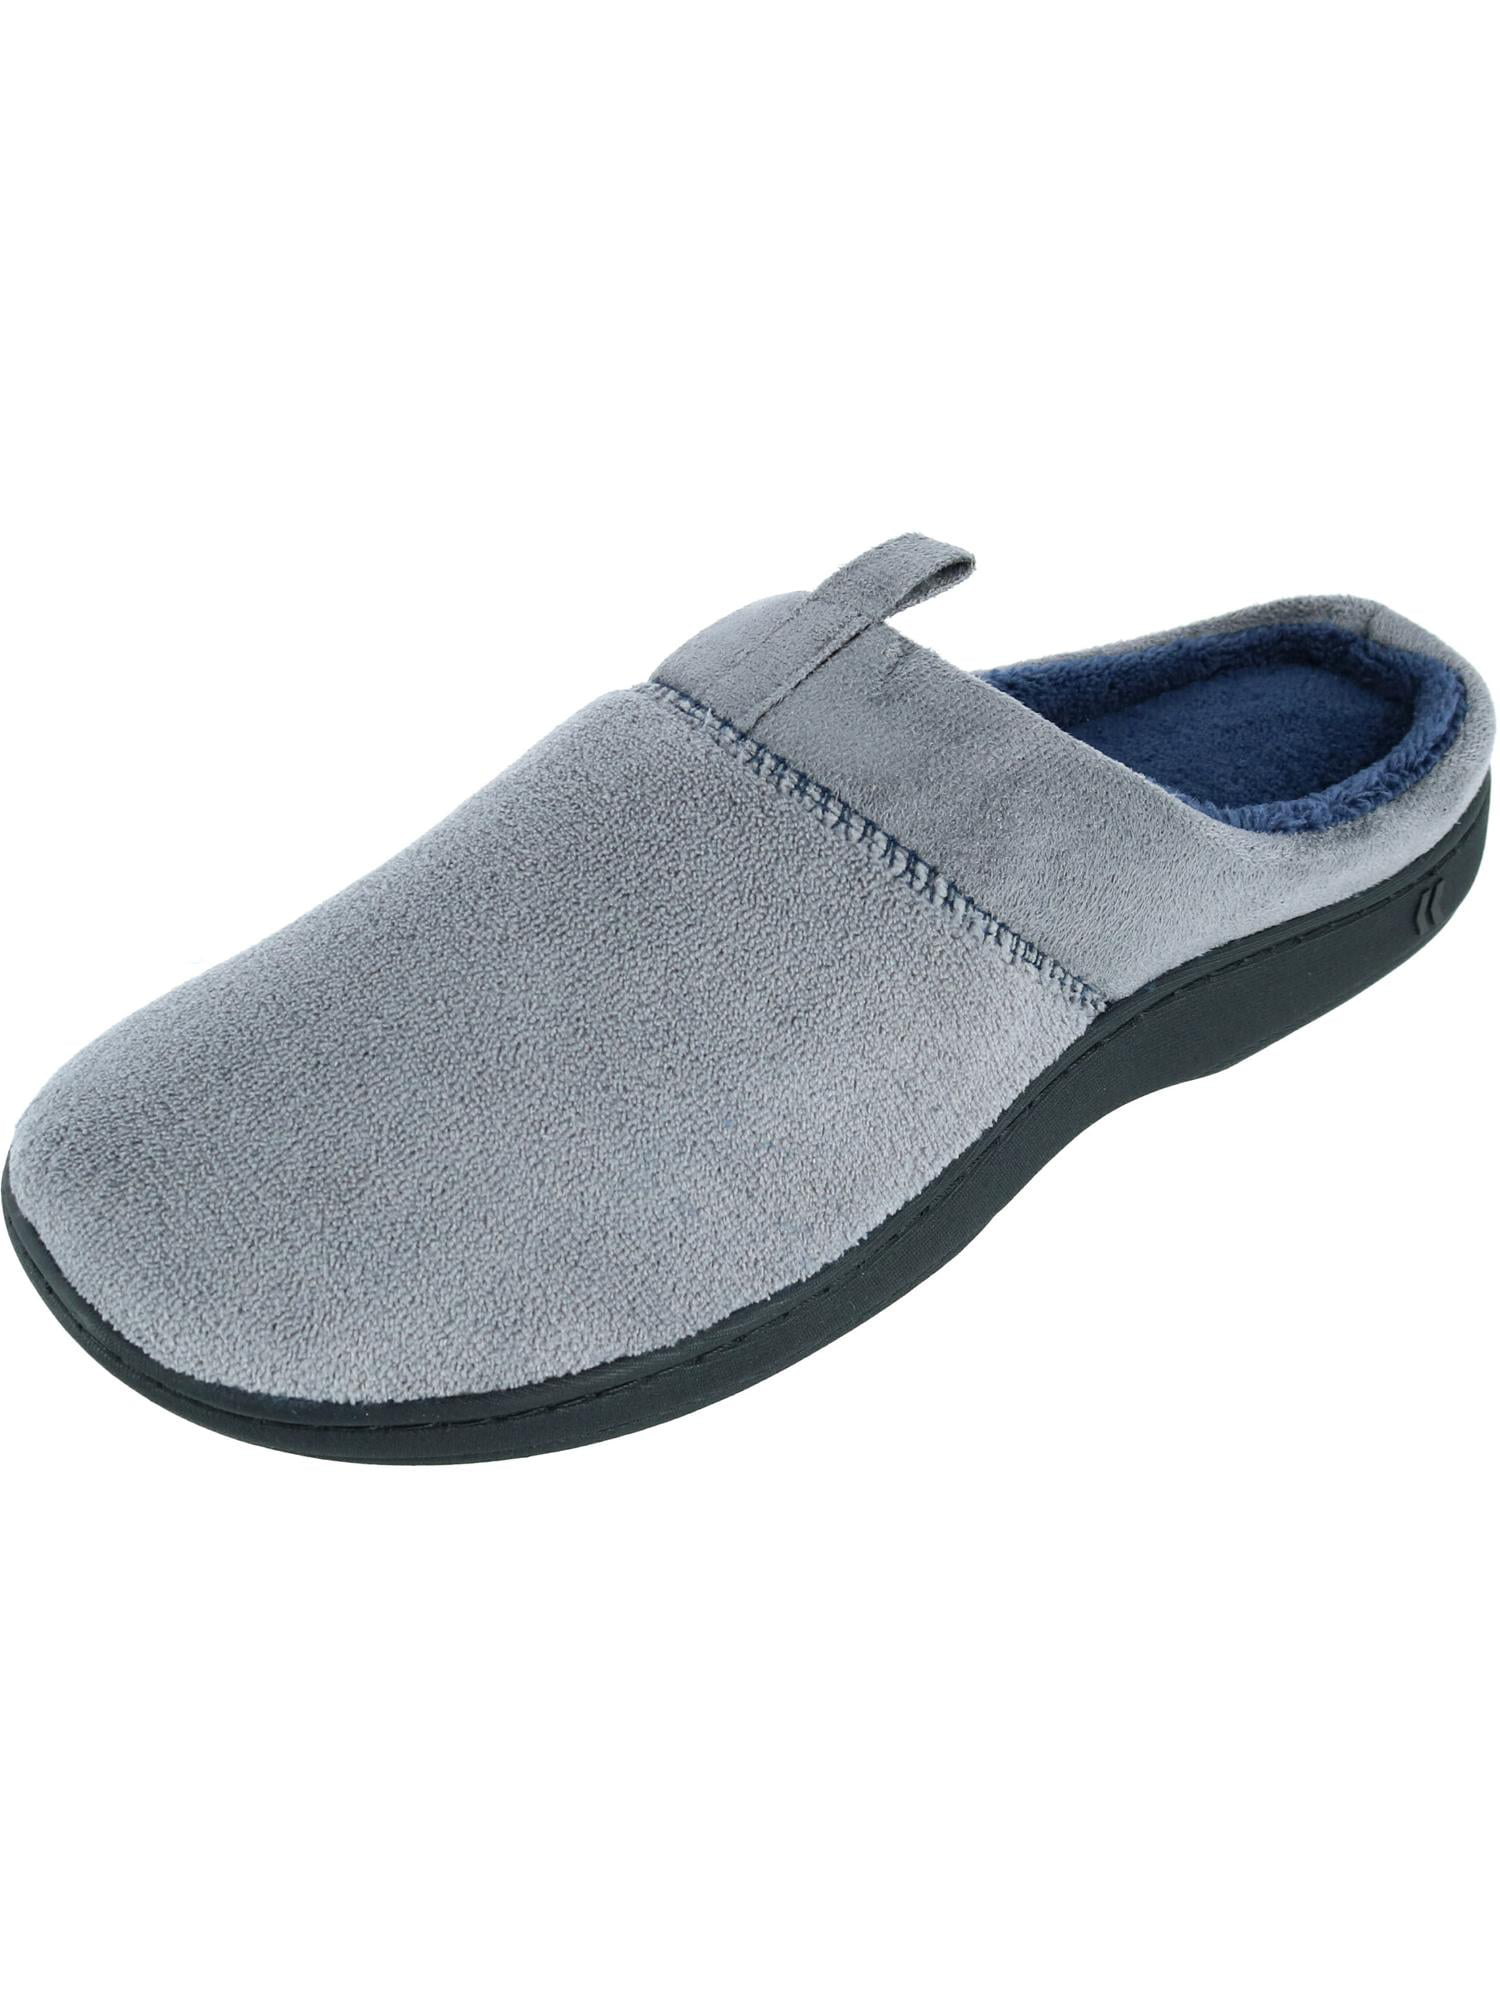 isotoner memory foam slippers mens